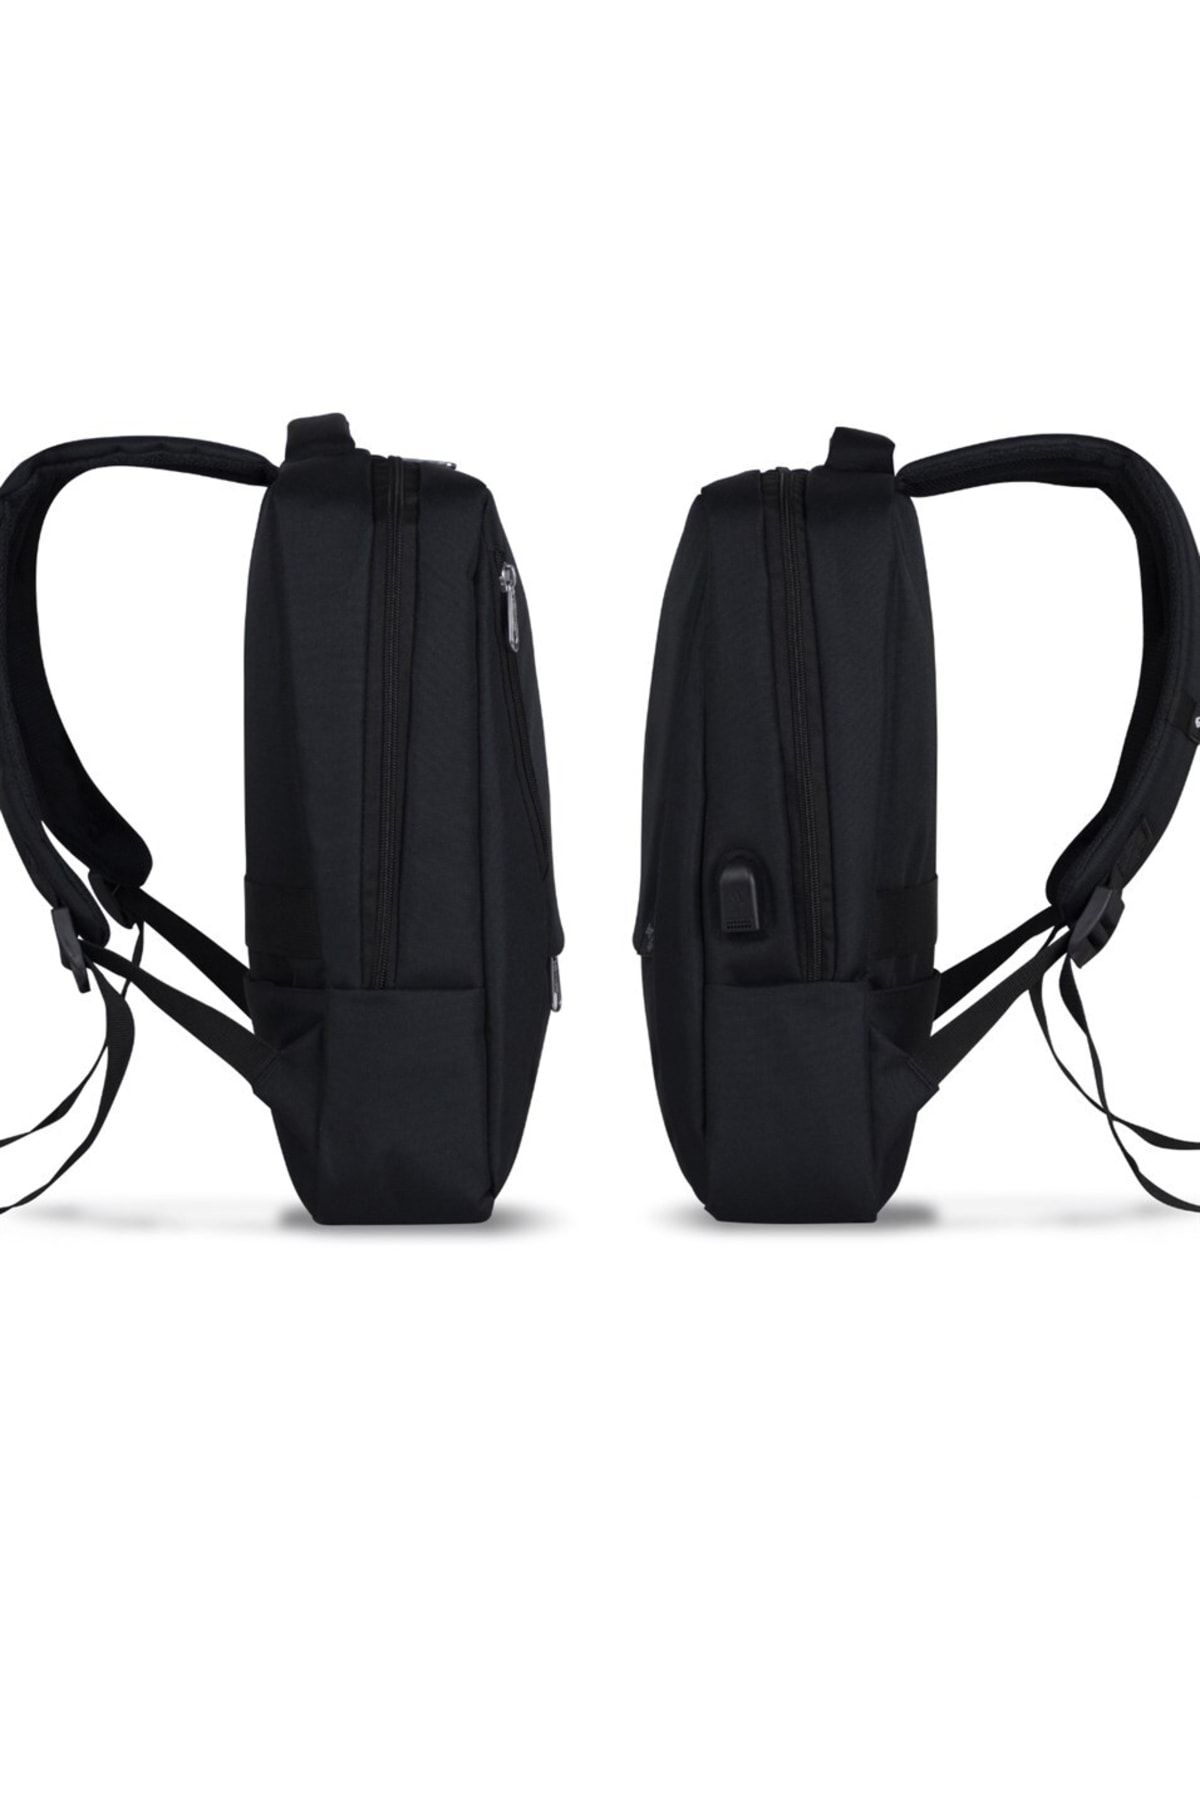 Smart Bag Active Usb Şarj Girişli Slim Notebook Laptop Sırt Çantası Siyah